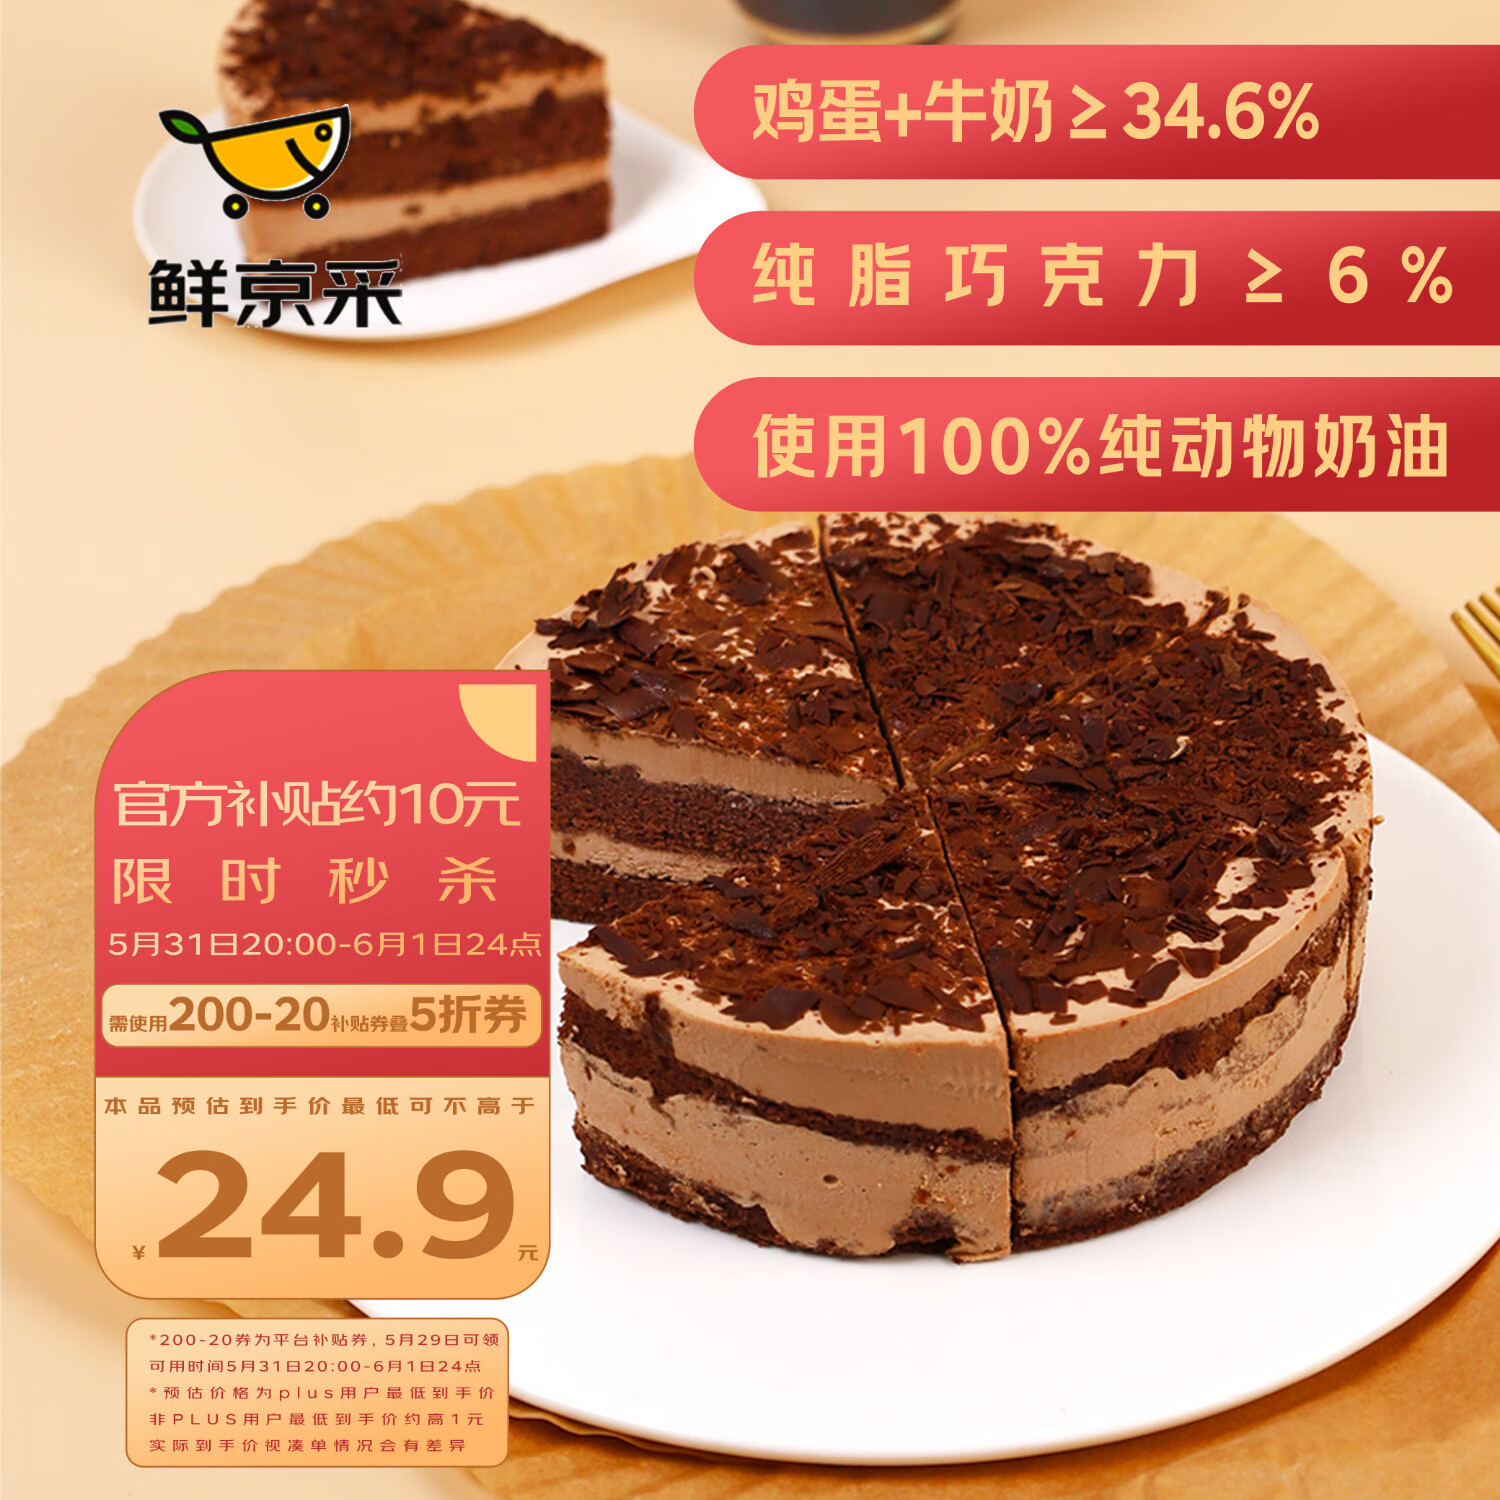 再降价、plus会员:鲜京采黑巧酪酪巧克力蛋糕 6寸 6块装420g＊3件 67.81元包邮